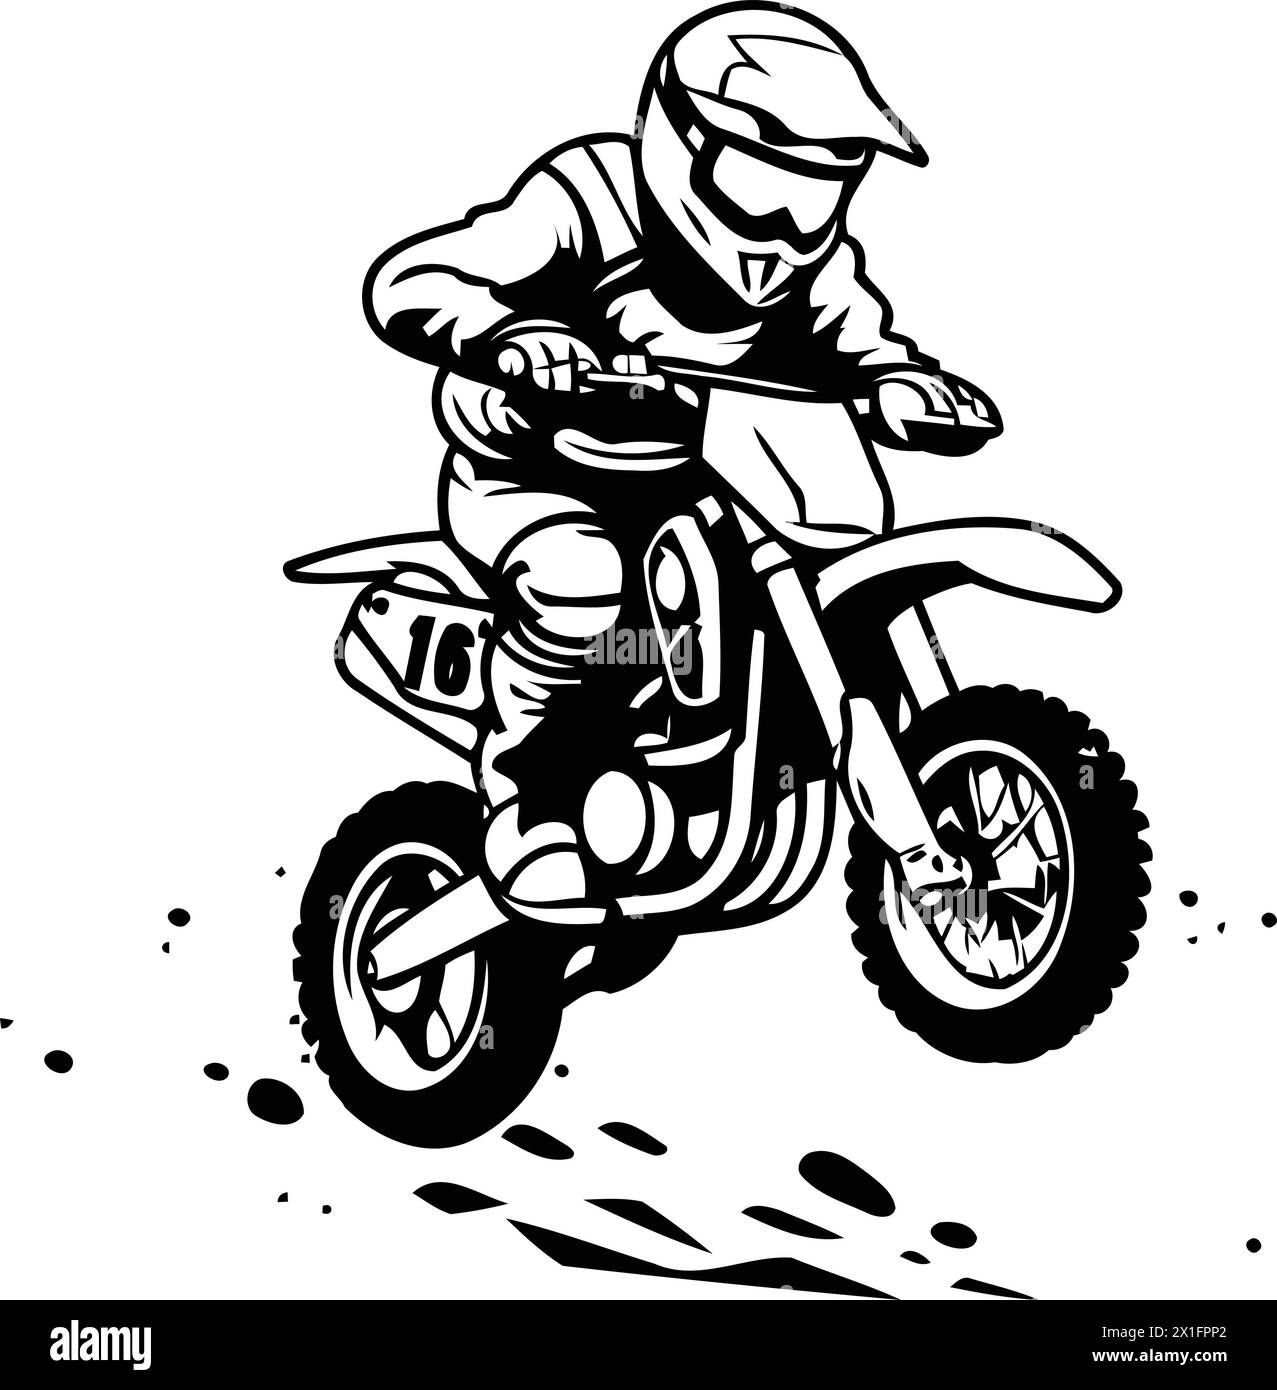 Illustrazione vettoriale di un motociclista che corre su una pista sterrata. Illustrazione Vettoriale